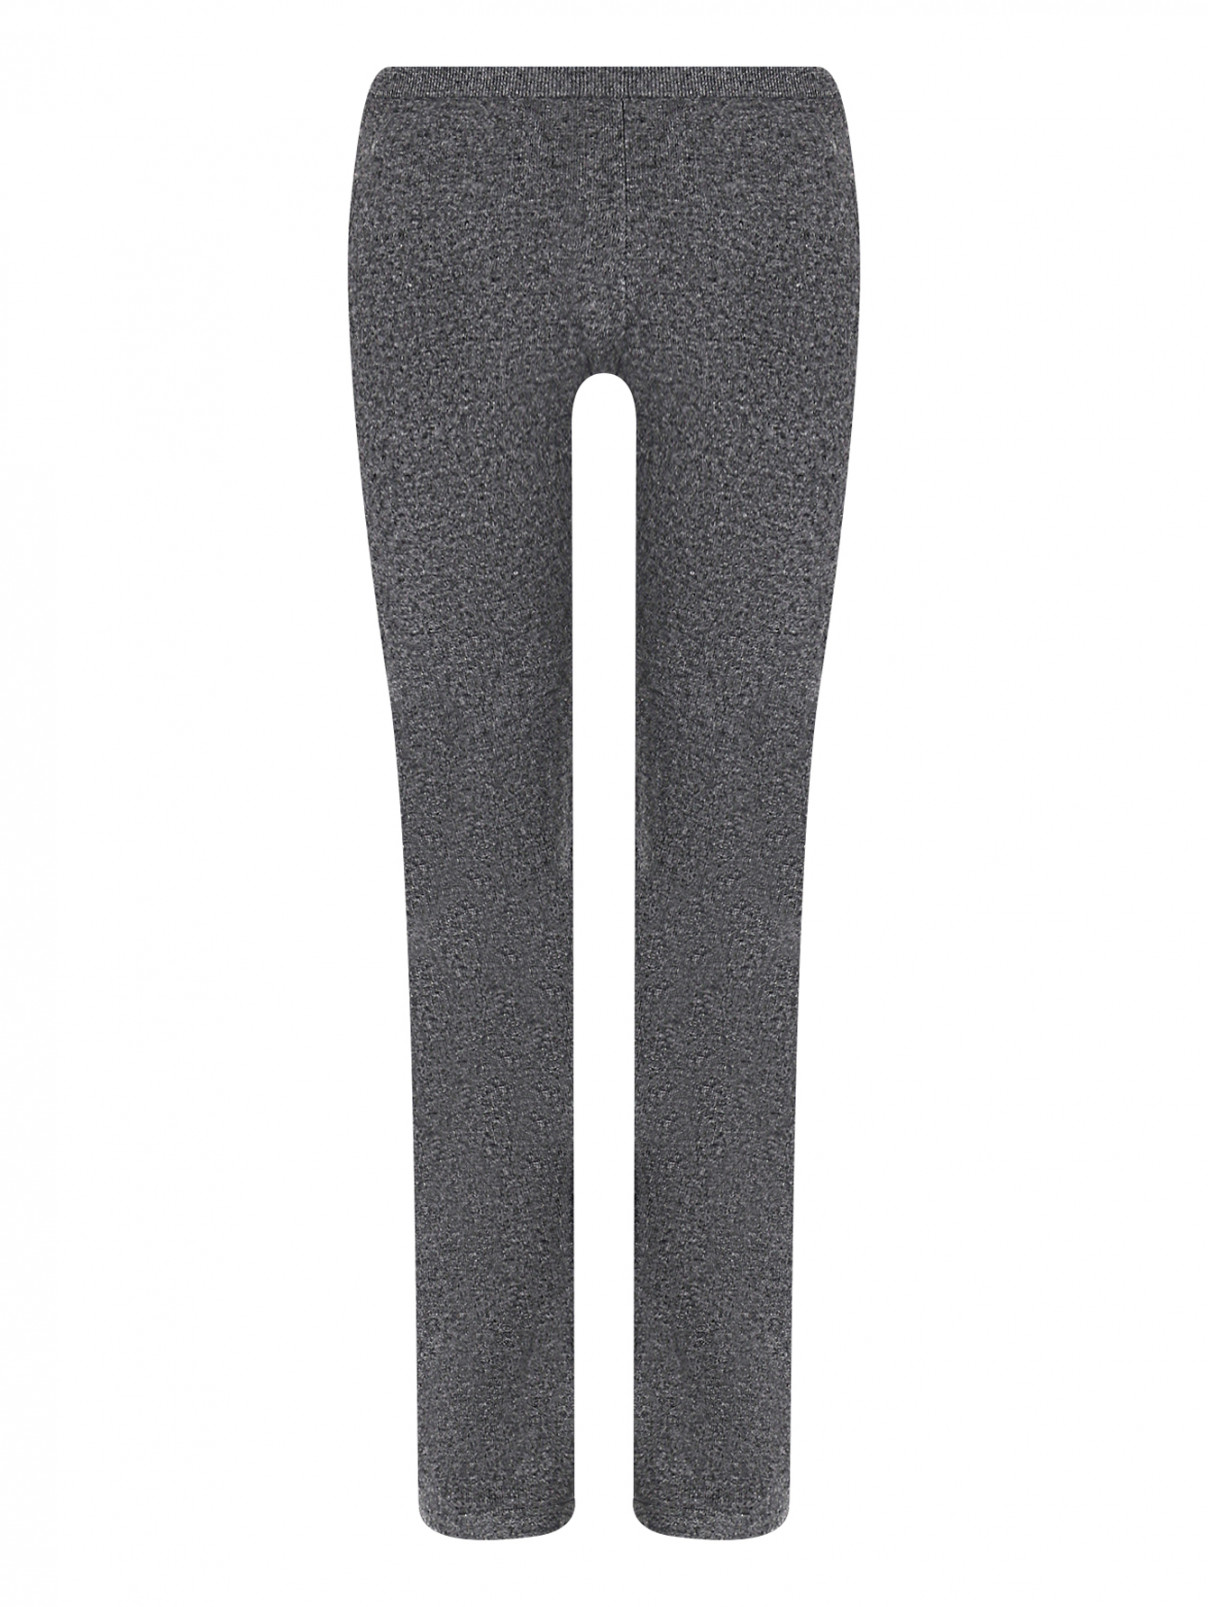 Трикотажные брюки из шерсти и кашемира на резинке Brown Allan  –  Общий вид  – Цвет:  Серый